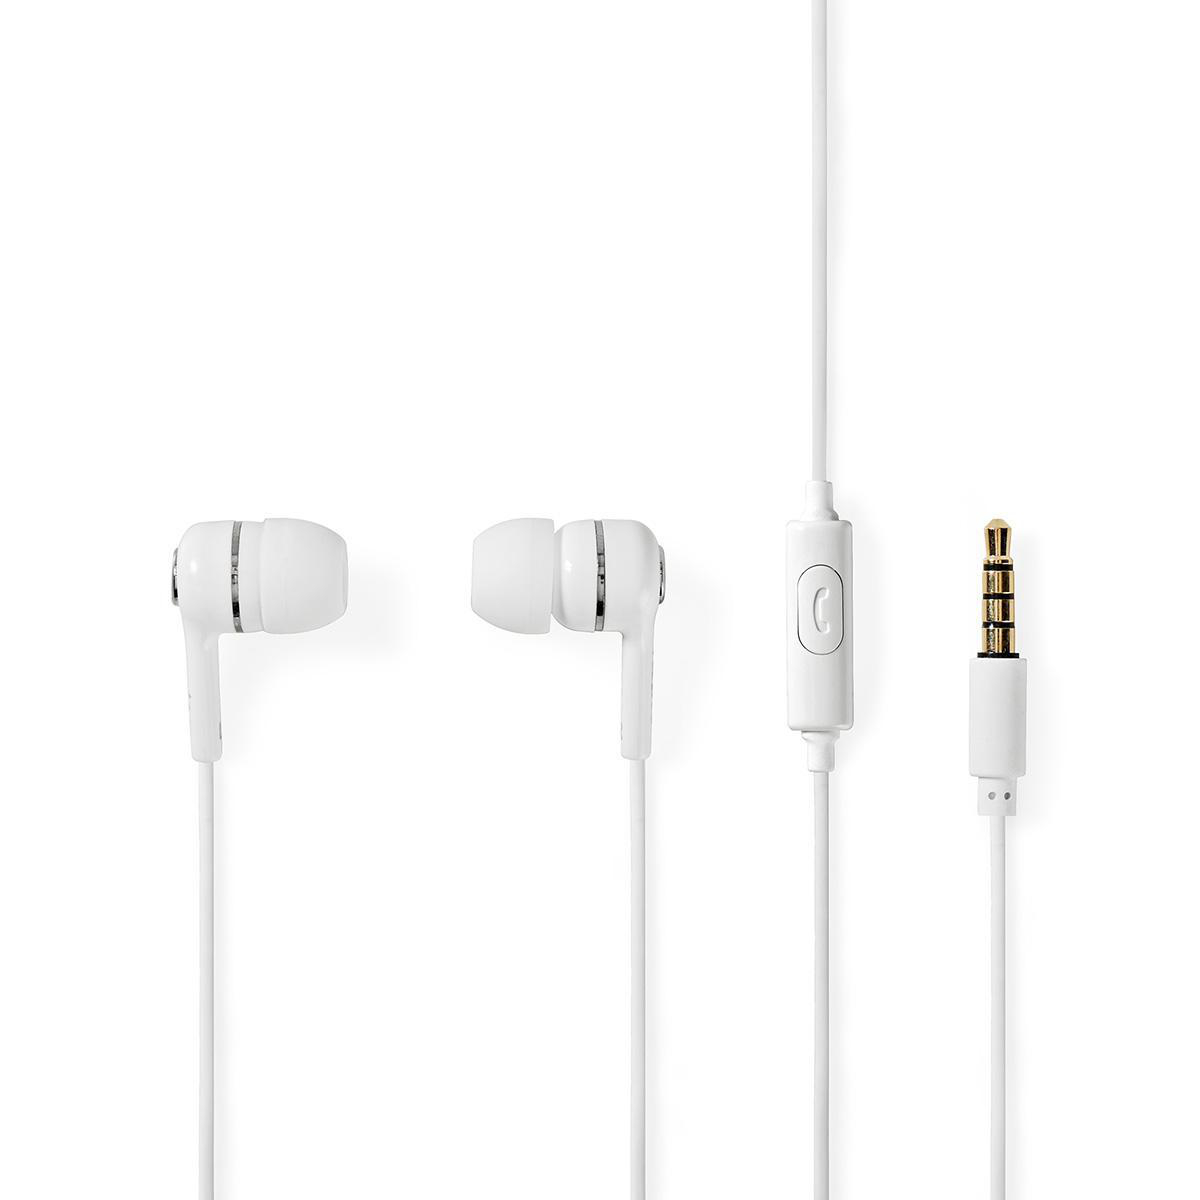 Nedis HPWD2020WT špuntová sluchátka do uší s mikrofonem, 95 dB, kabel 1.2 m, bílá